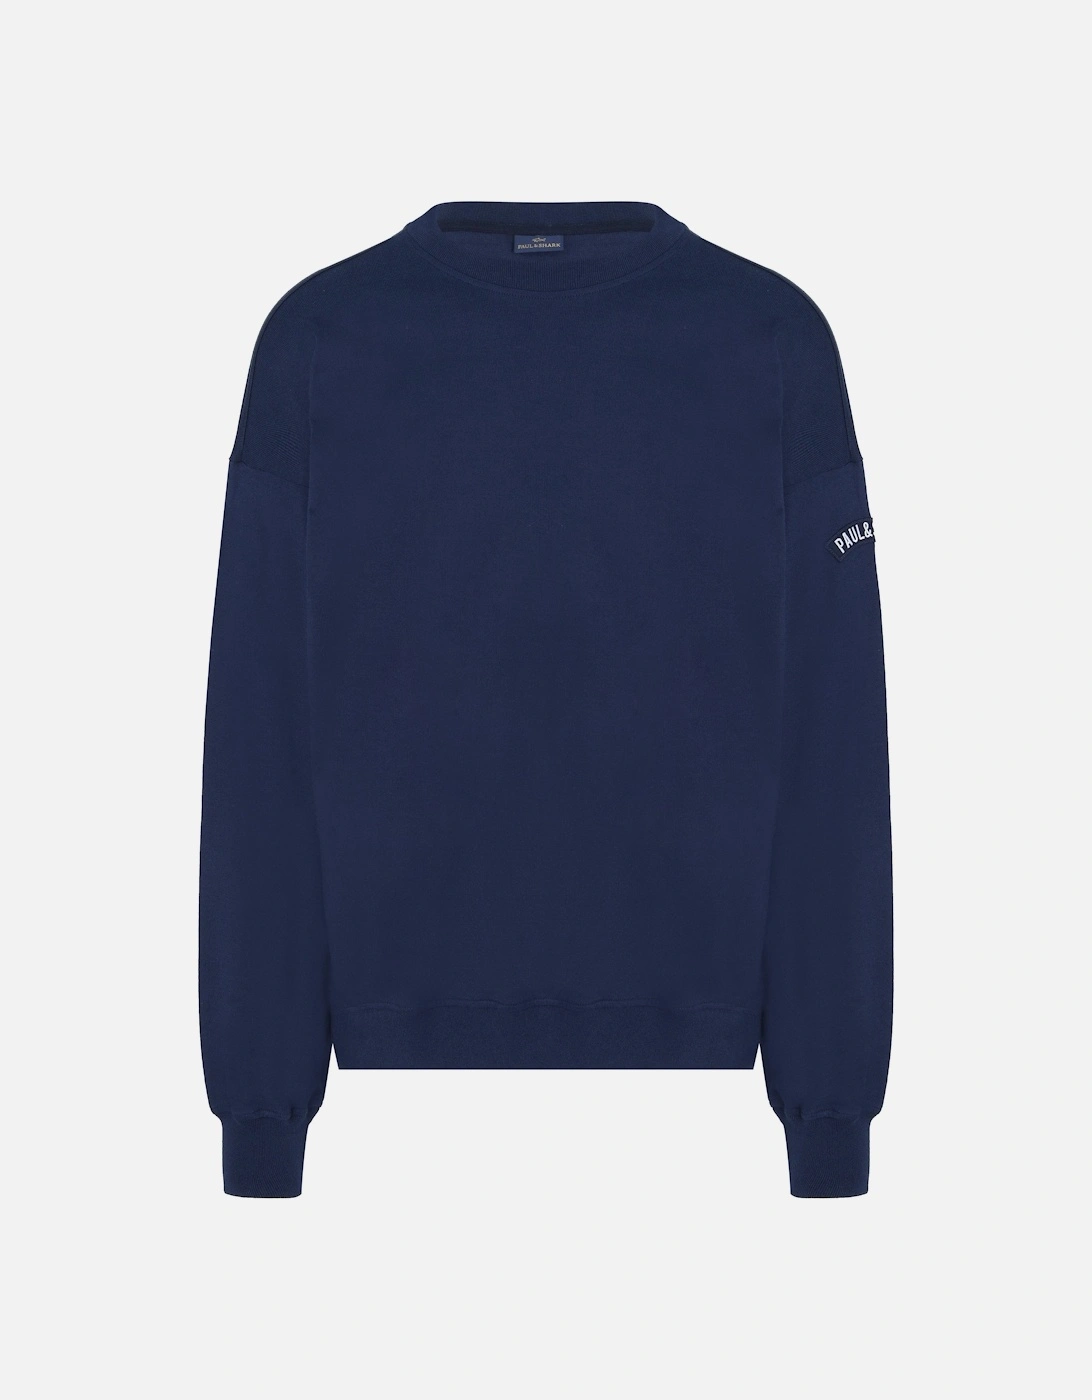 90's Fit Cotton Sweatshirt Navy, 6 of 5